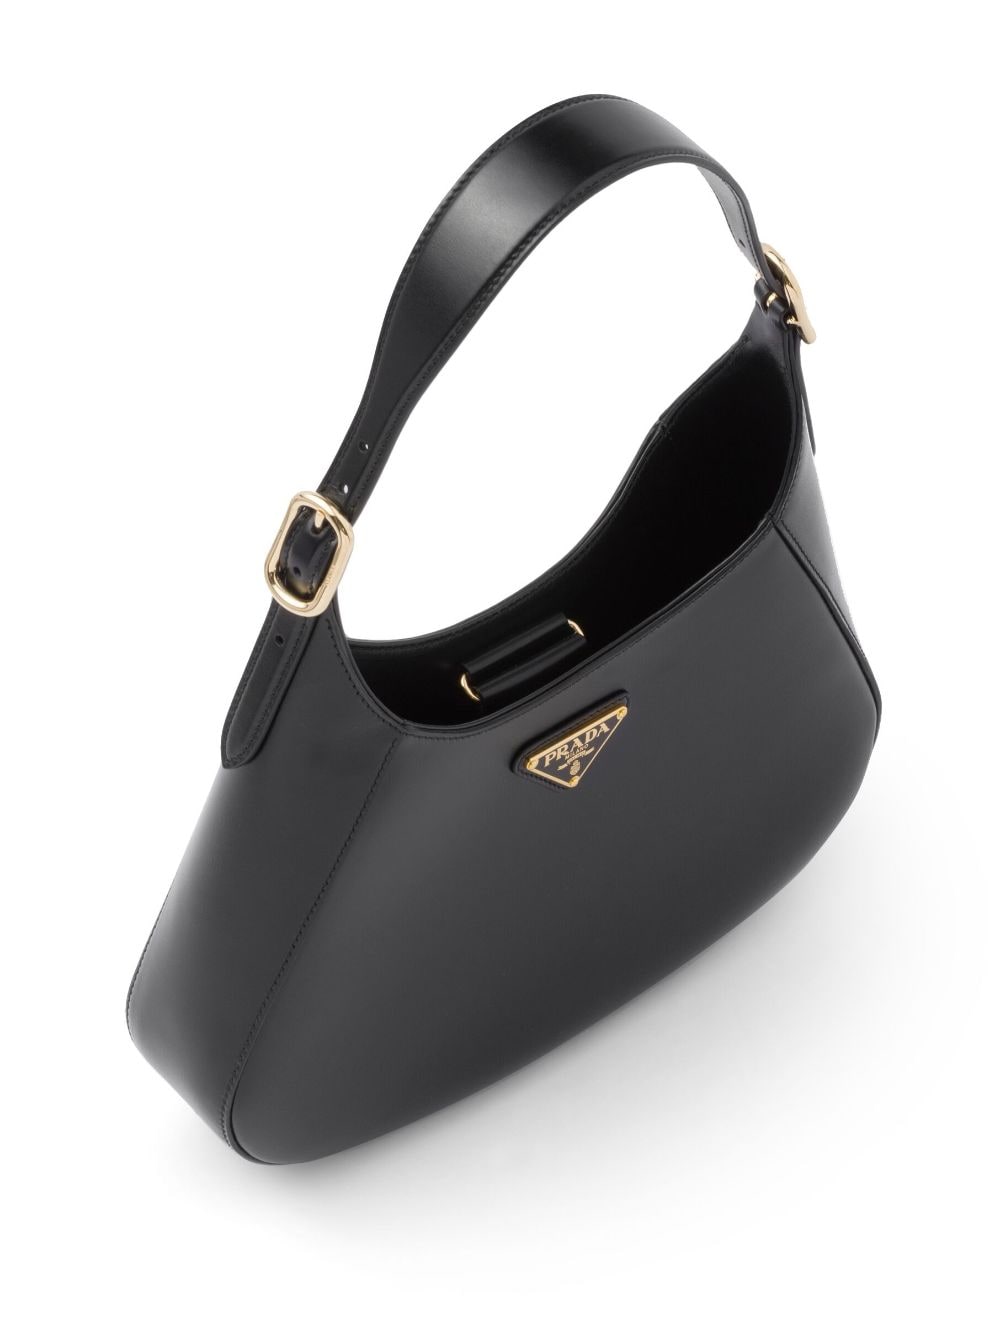 Logo Leather Shoulder Bag in Black - Prada